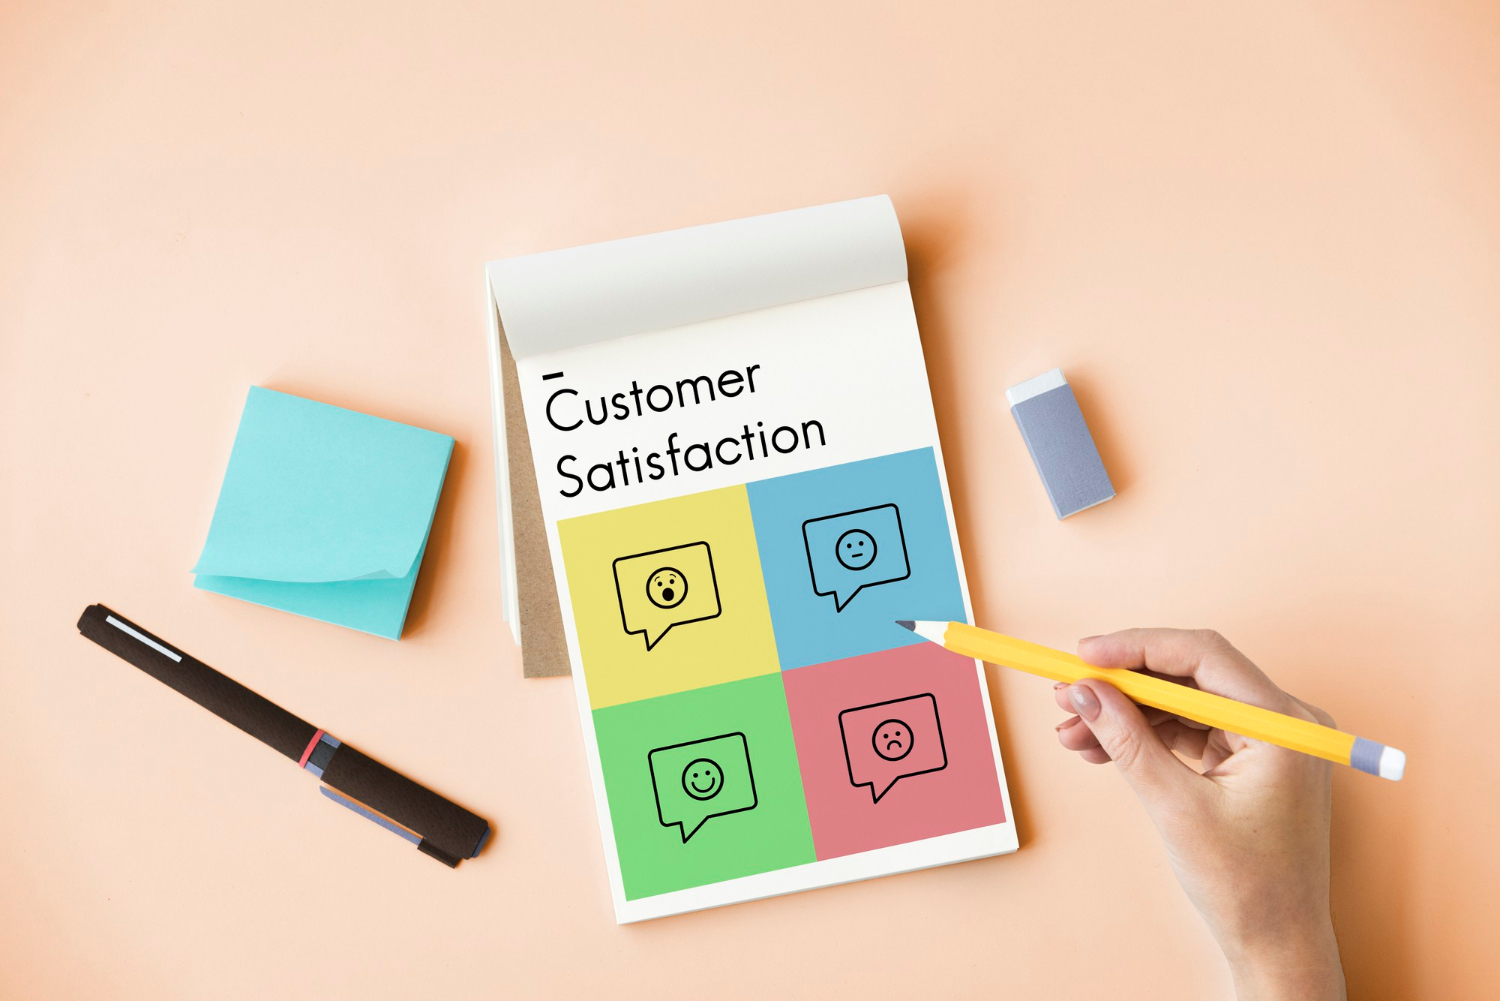 Customer satisfaction merupakan kunci performa penjualan yang baik